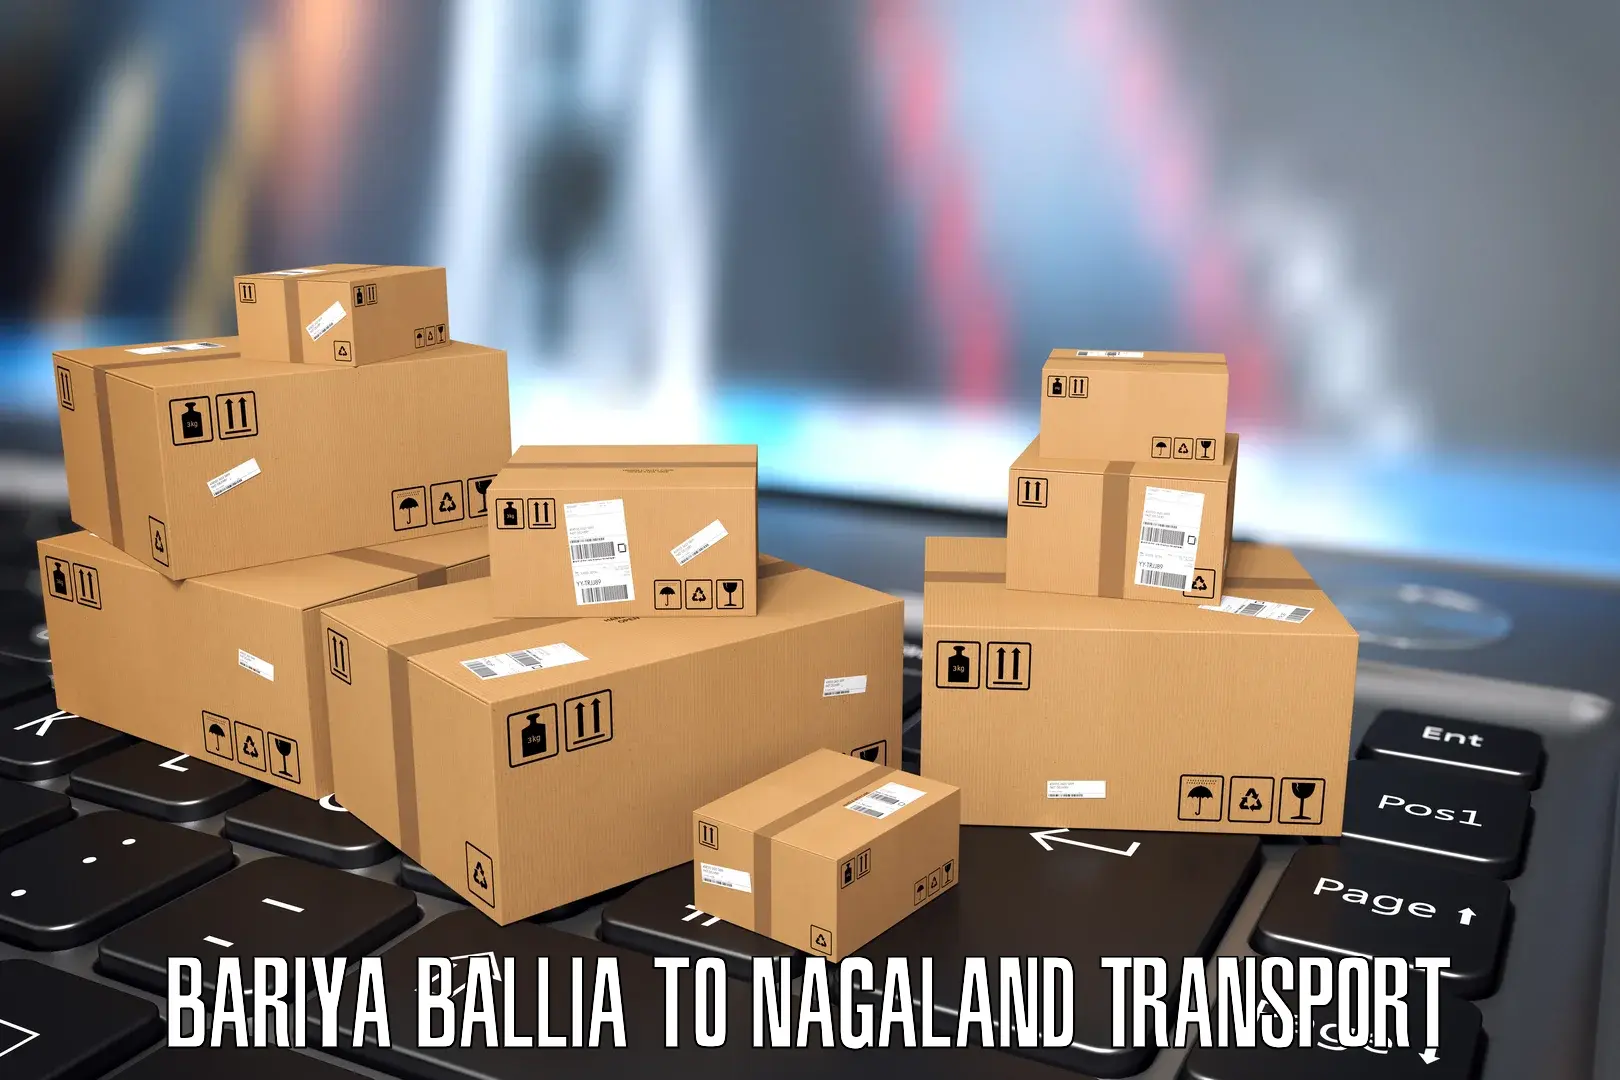 Bike transport service Bariya Ballia to Nagaland